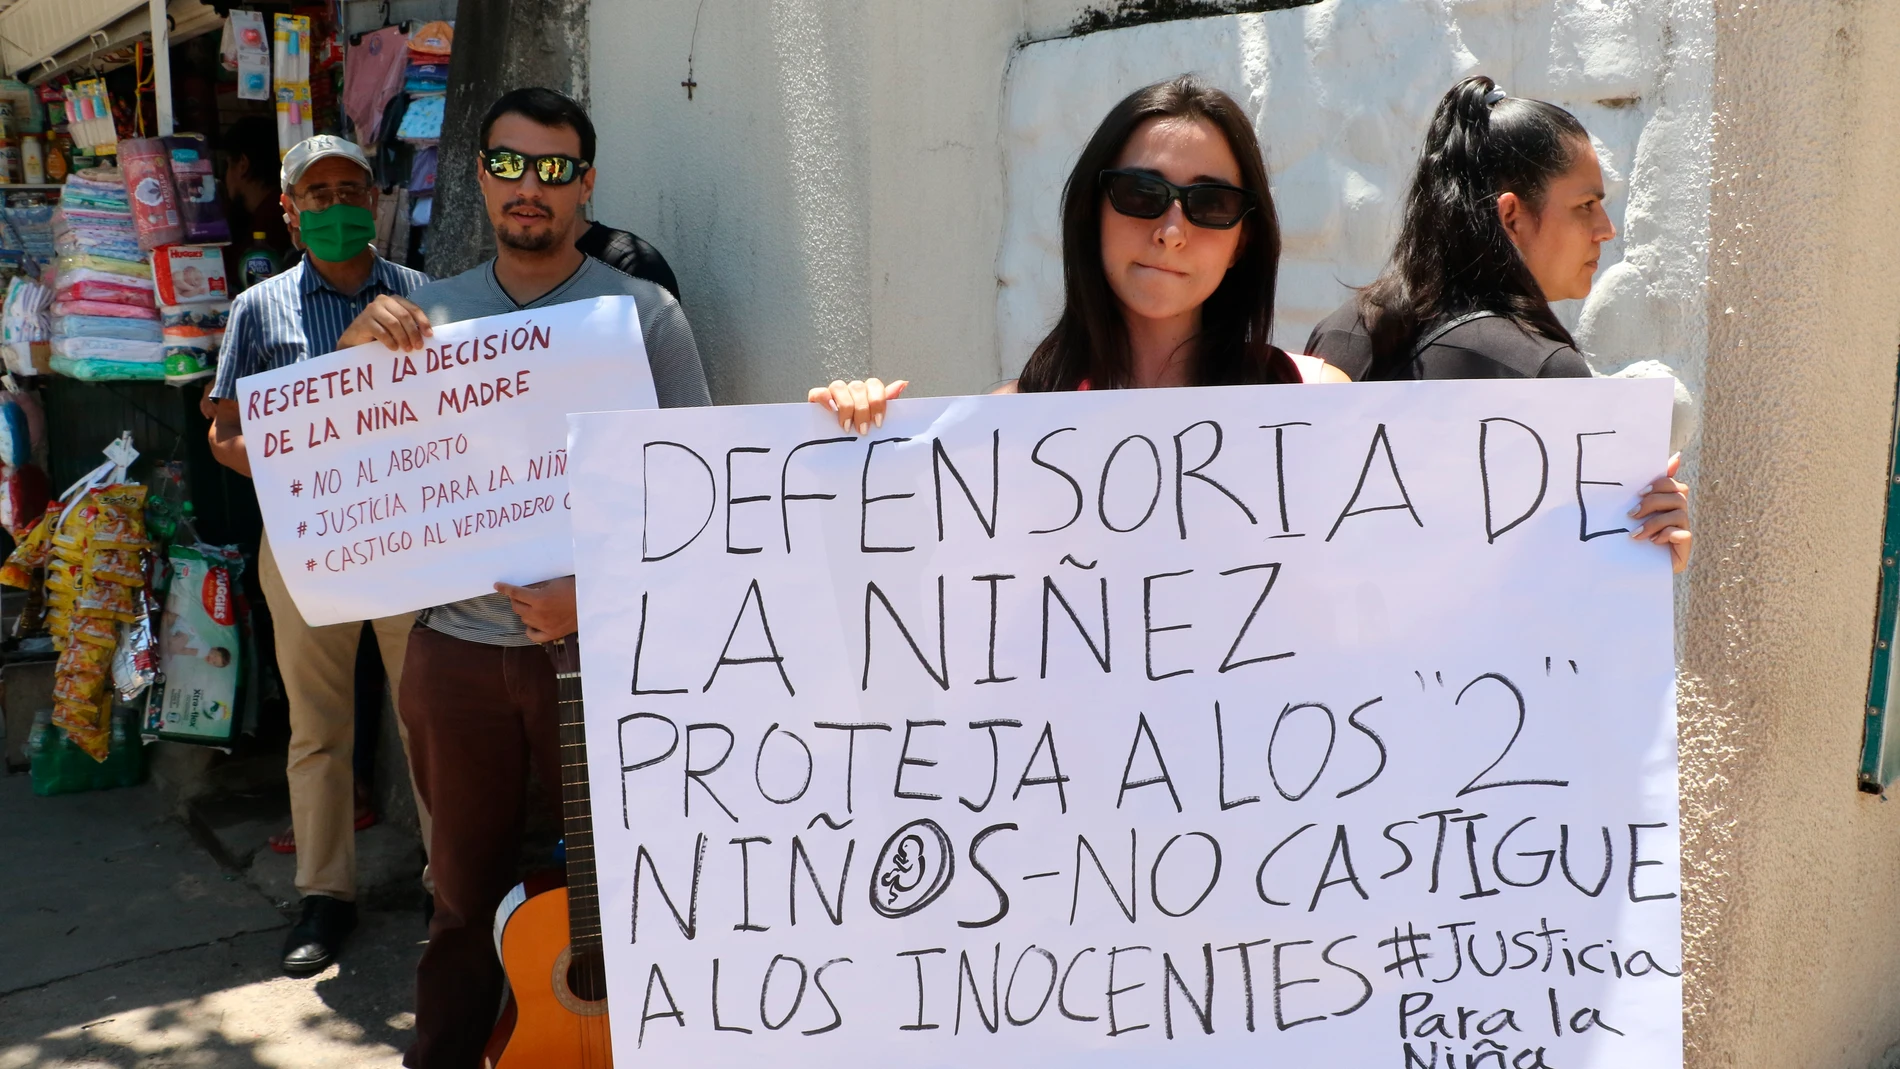 El caso de una menor violada y embarazada por su abuelastro genera protestas y debate en Bolivia